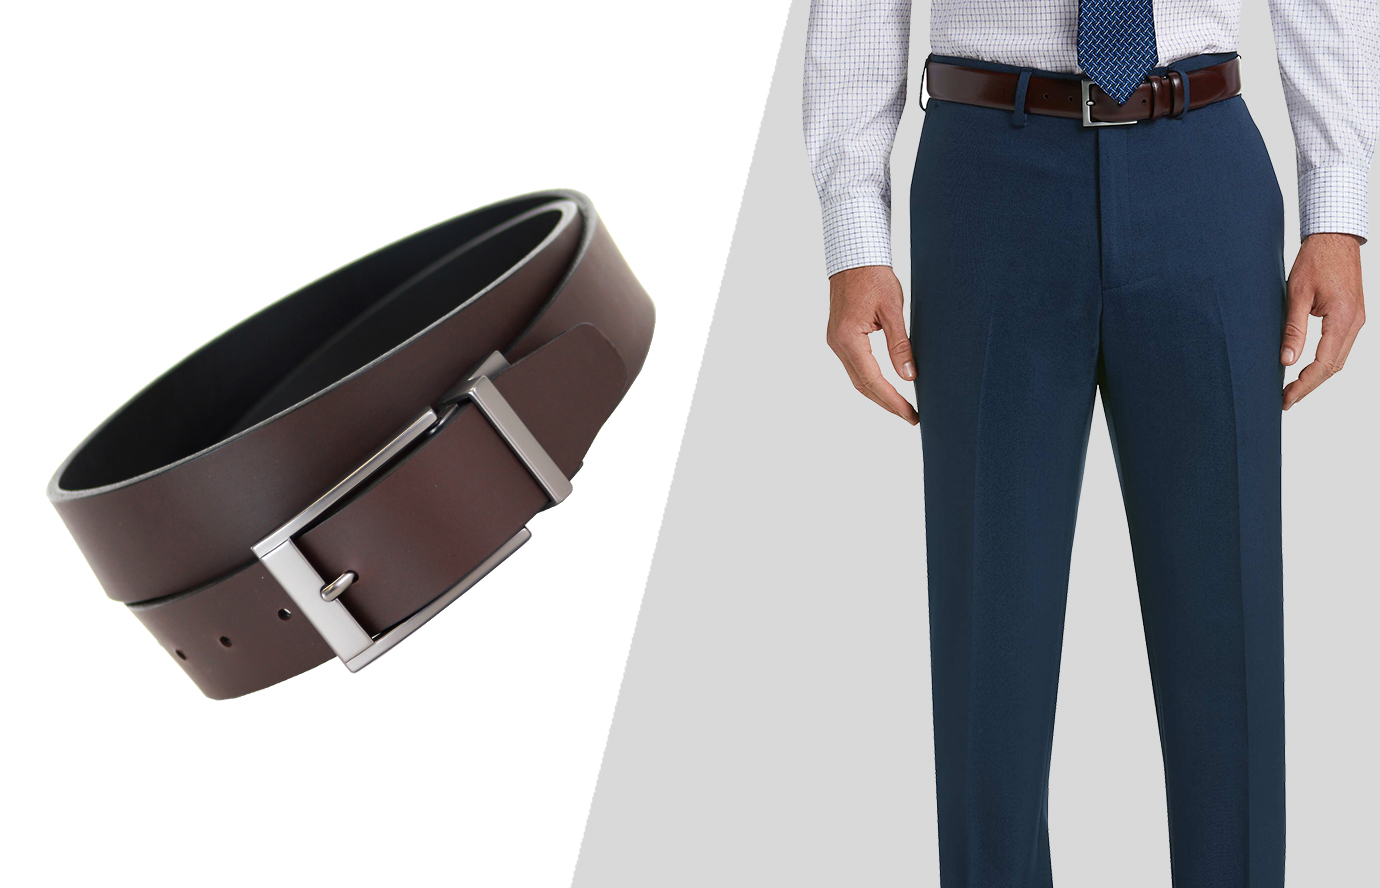 suit accessories: the belt